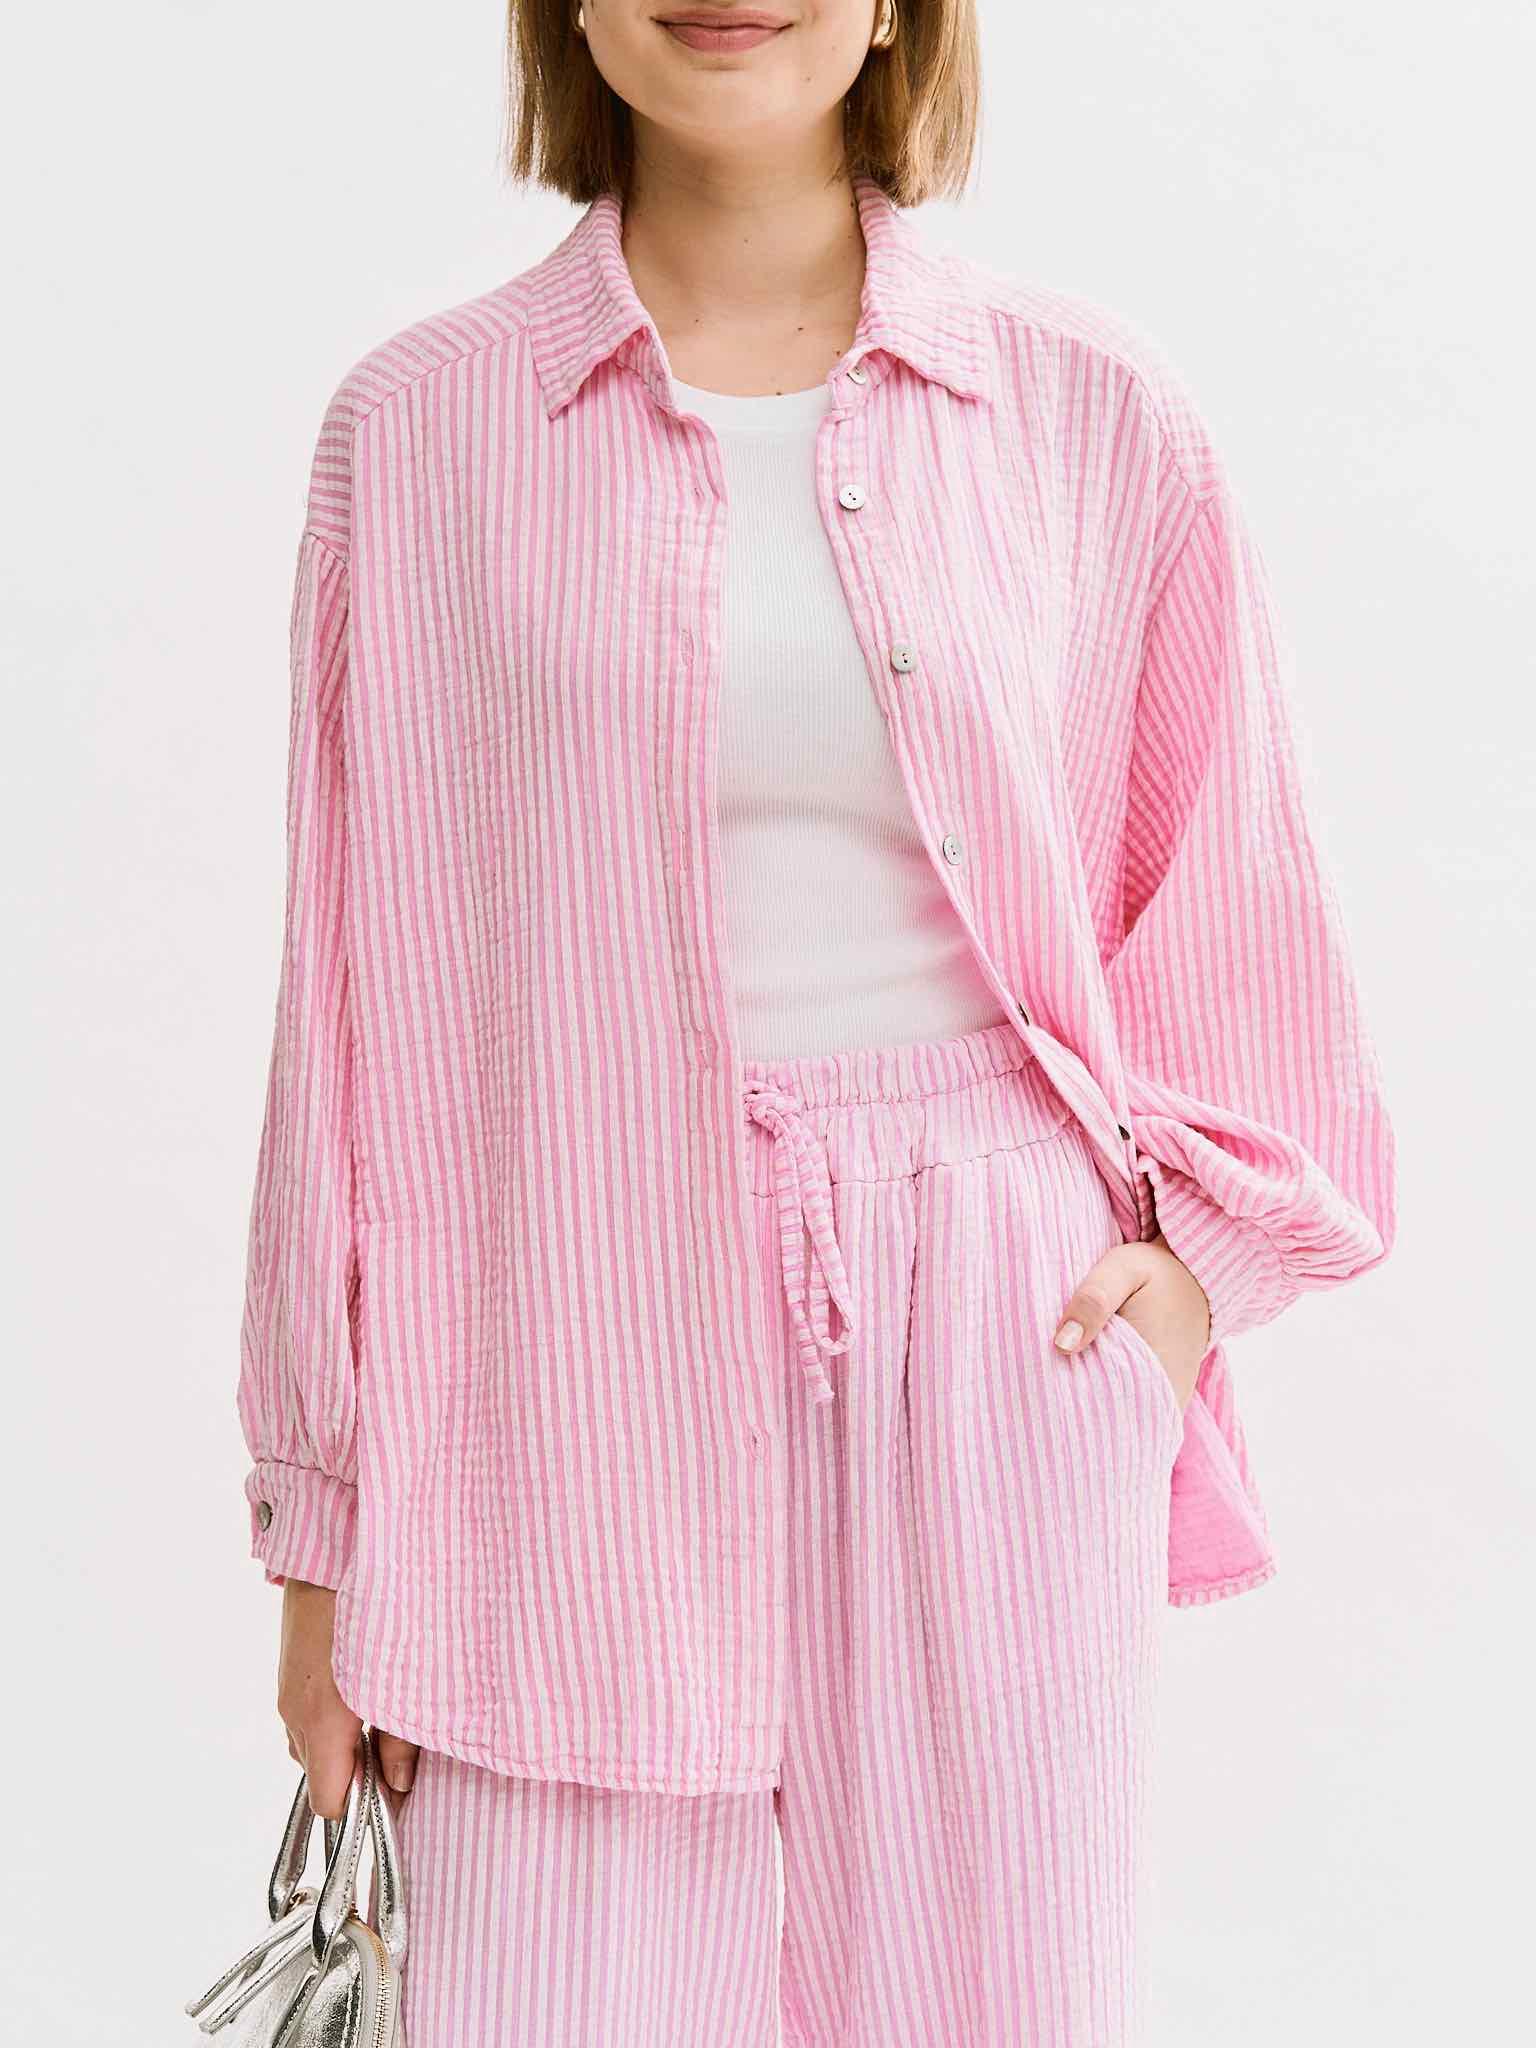 Gestreifte Musselin Bluse Langarm für Damen in Baby Pink von Maingold Basics